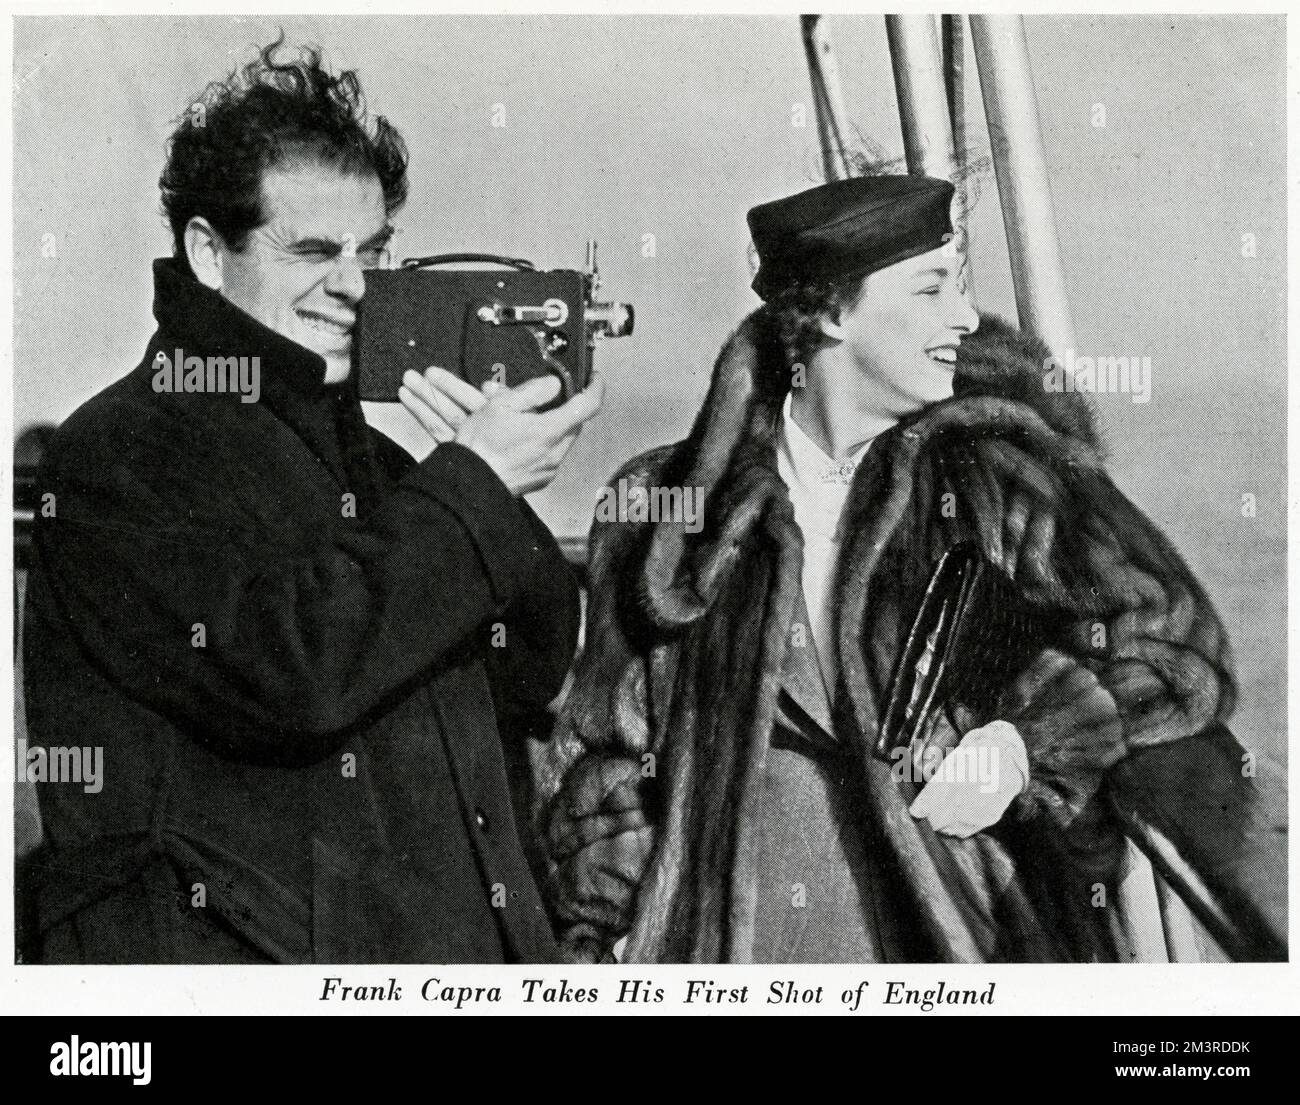 Il regista americano Frank Capra, insieme a sua moglie Lucille Warner, arriva a Egnland sulla Normandie, un transatlantico. Ha partecipato alla prima del film di Lost Horizon al cinema Tivoli di Londra. Data: 1937 Foto Stock